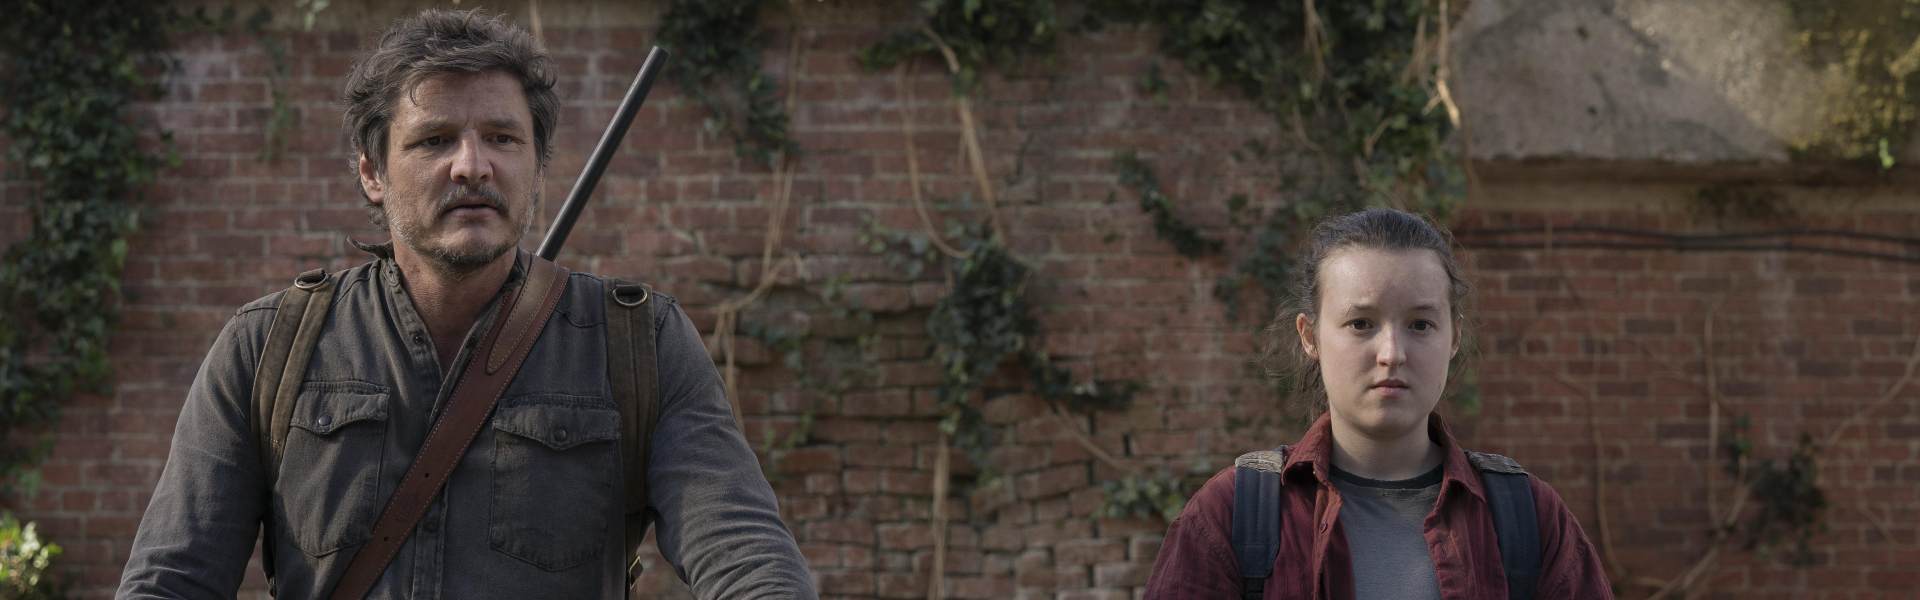 'The Last of Us': episodio 9 tiene horario anticipado, recuerda detalles para el final de temporada